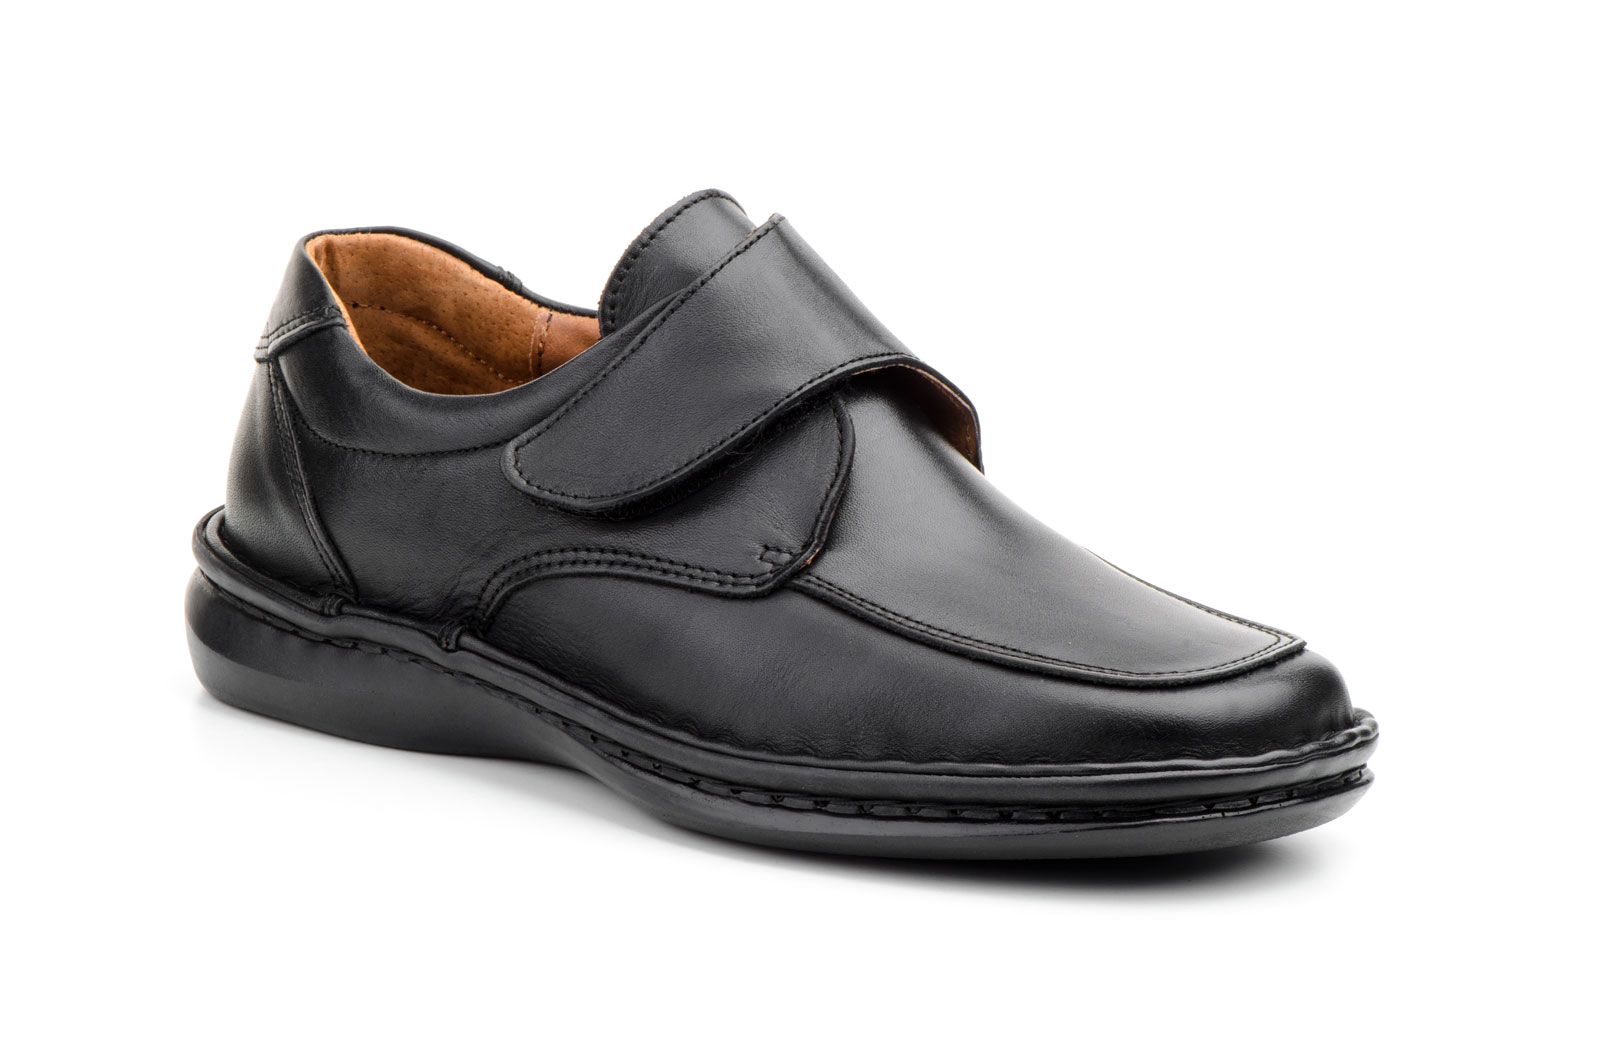 Zapatos Hombre Piel Negro Suela Cosida Plantilla Extraible  -  Ref. 60300 Negro